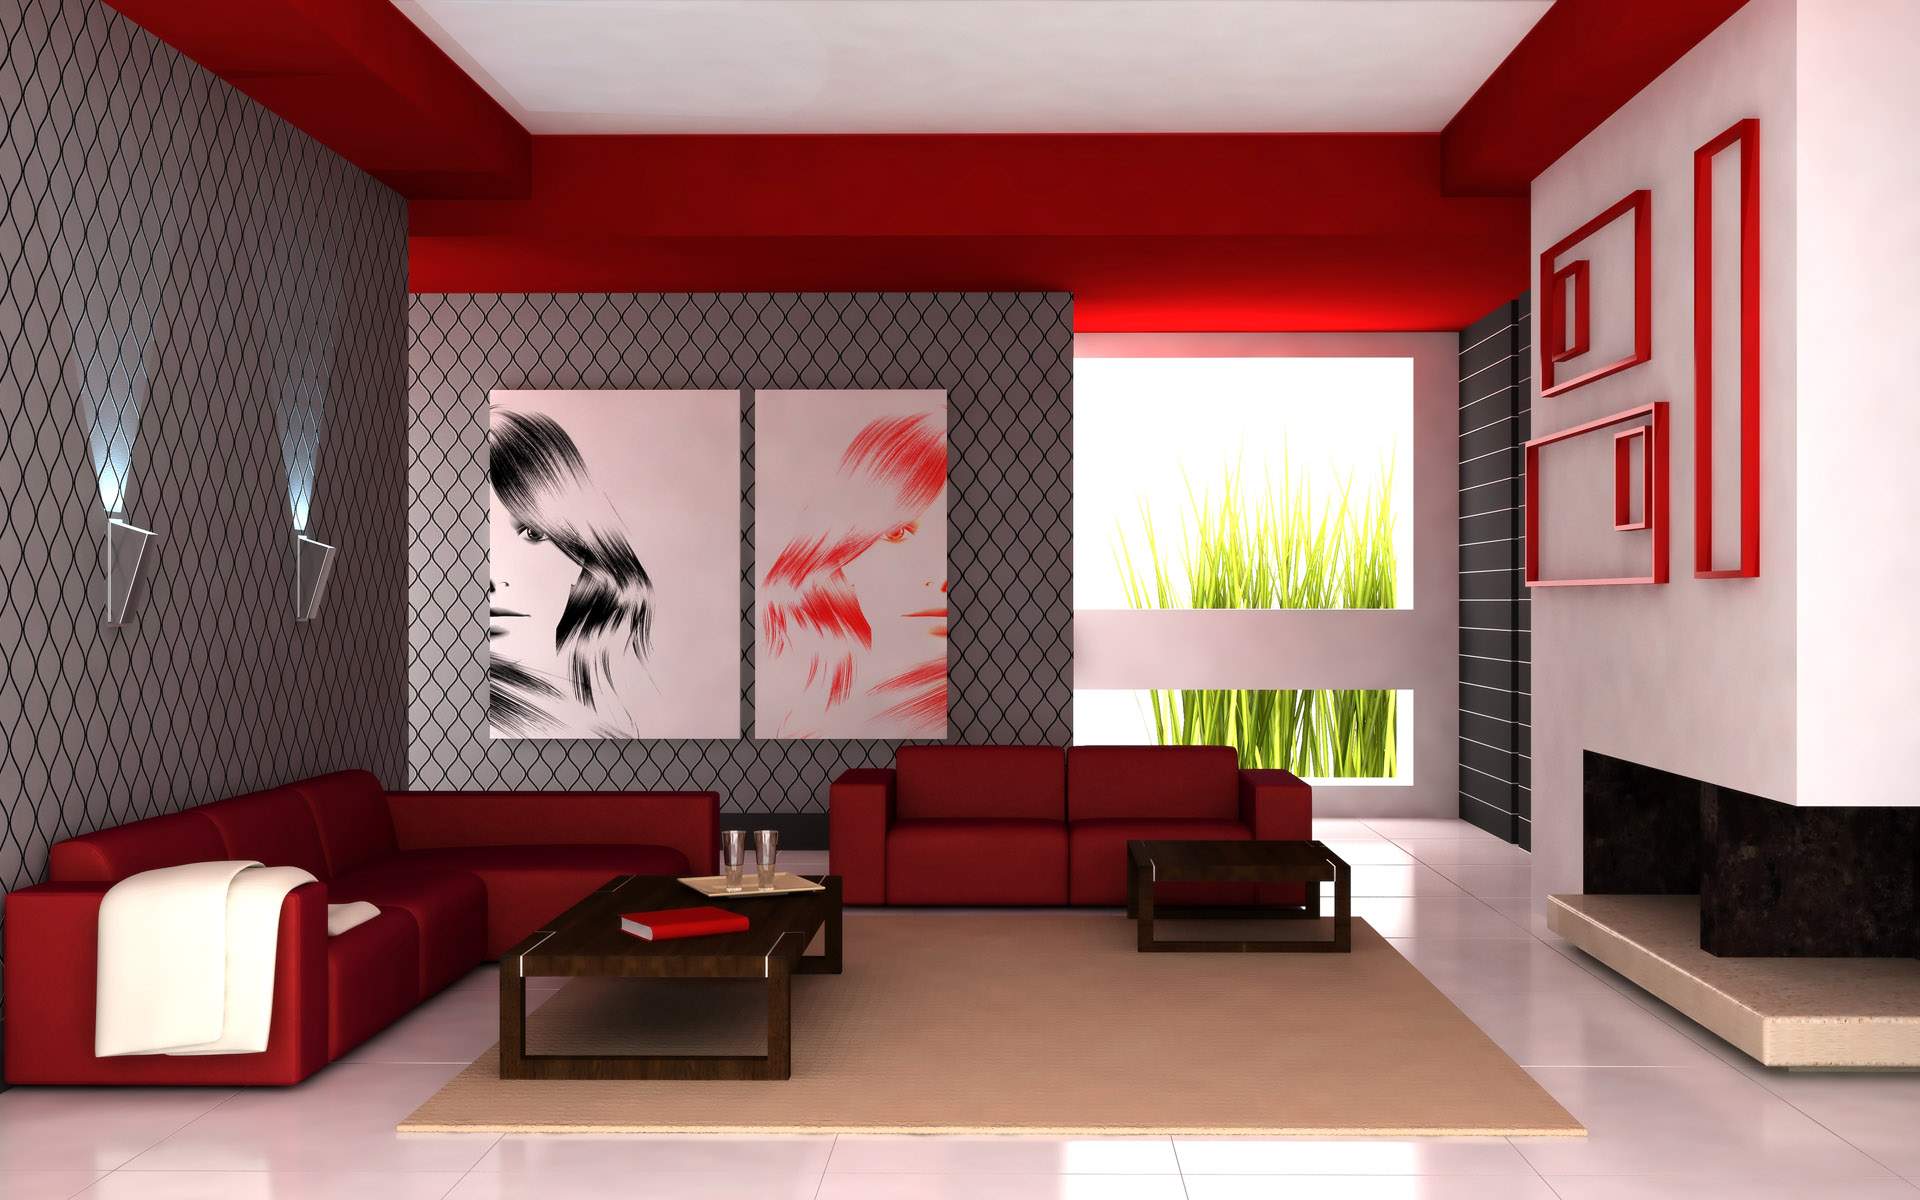 Beeldcitaat: http://divasndesign.com/wp-content/uploads/2013/05/Interior-Design-Luruxy-Red-White-Design1.jpg